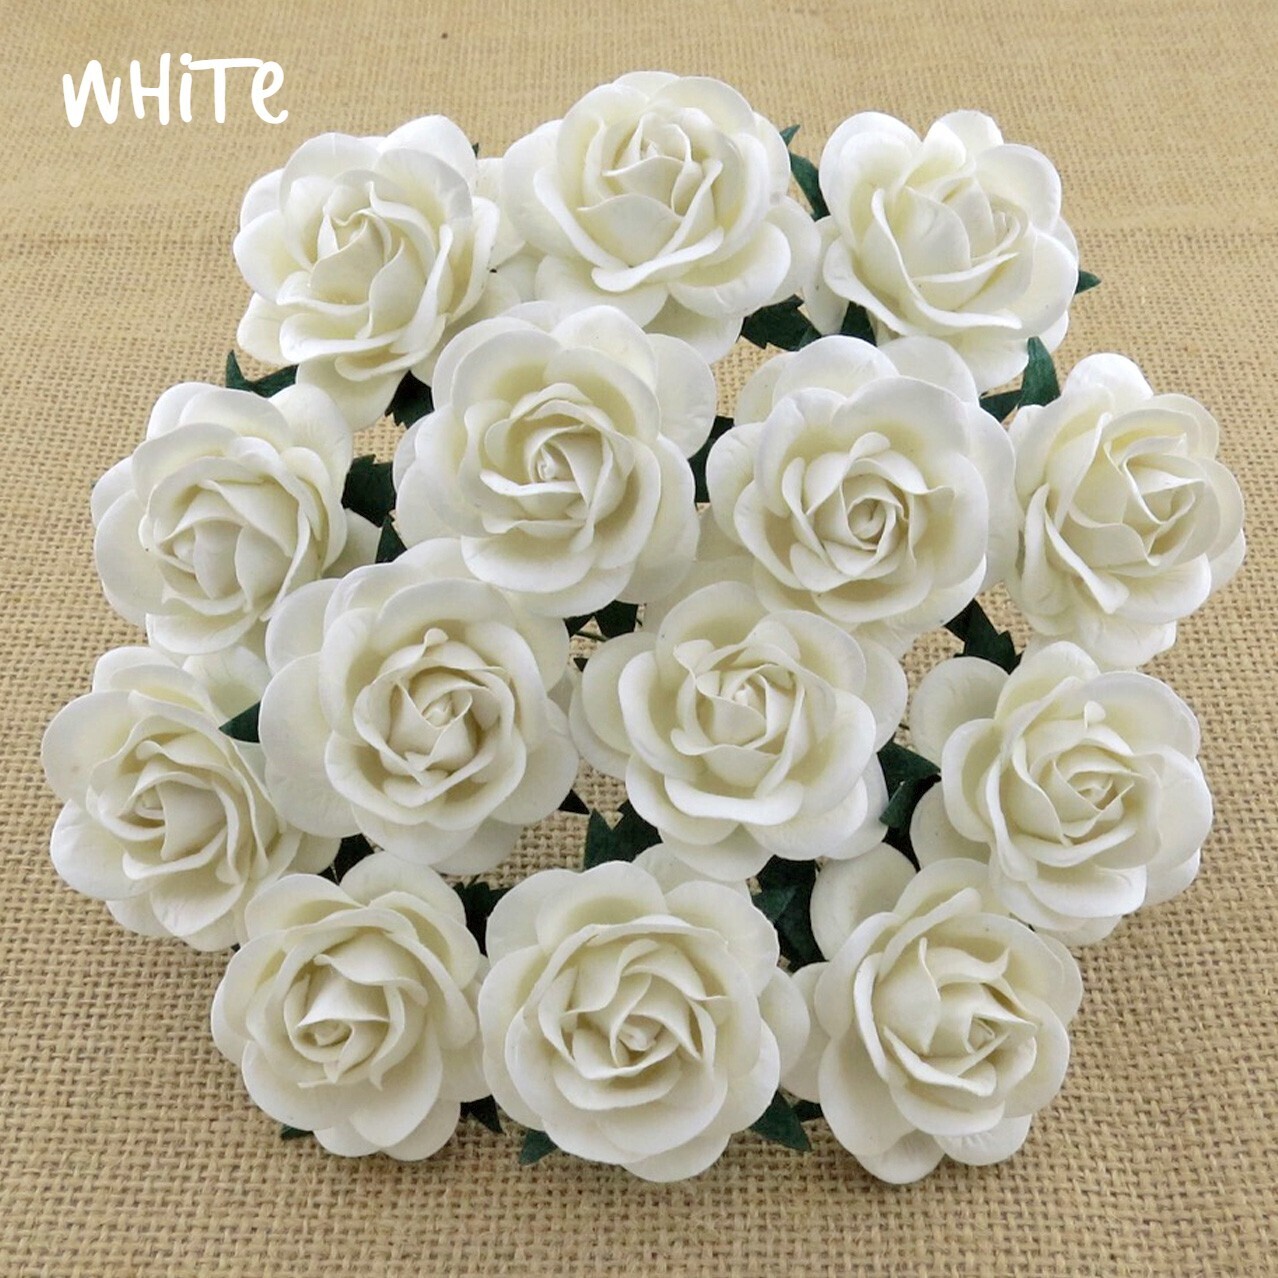 40mm White Trellis Roses - Promlee Flowers